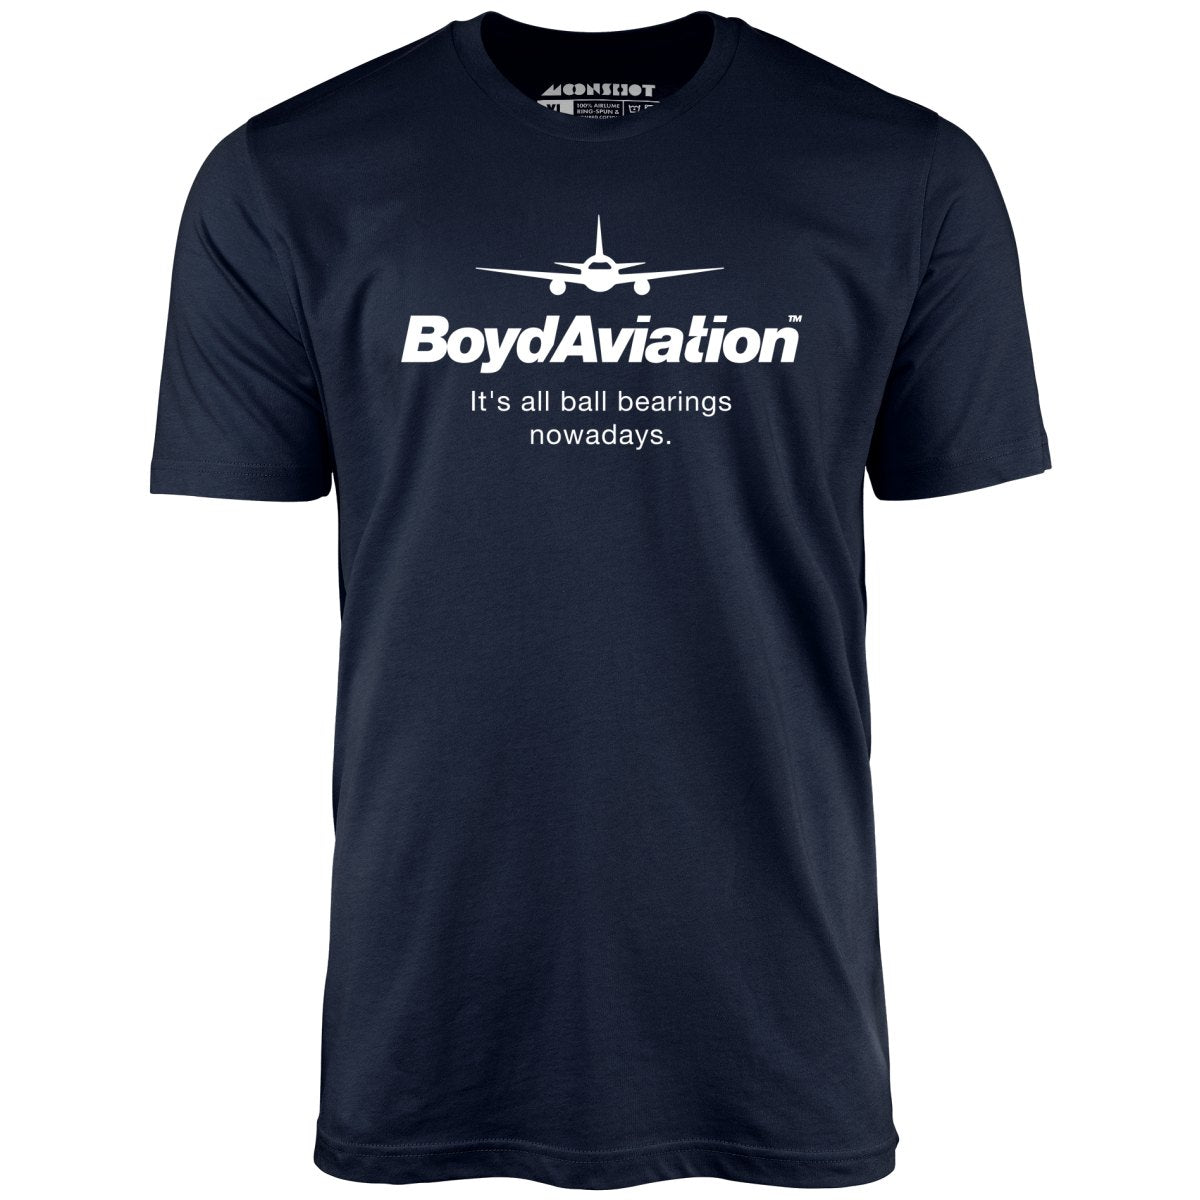 Boyd Aviation - Unisex T-Shirt